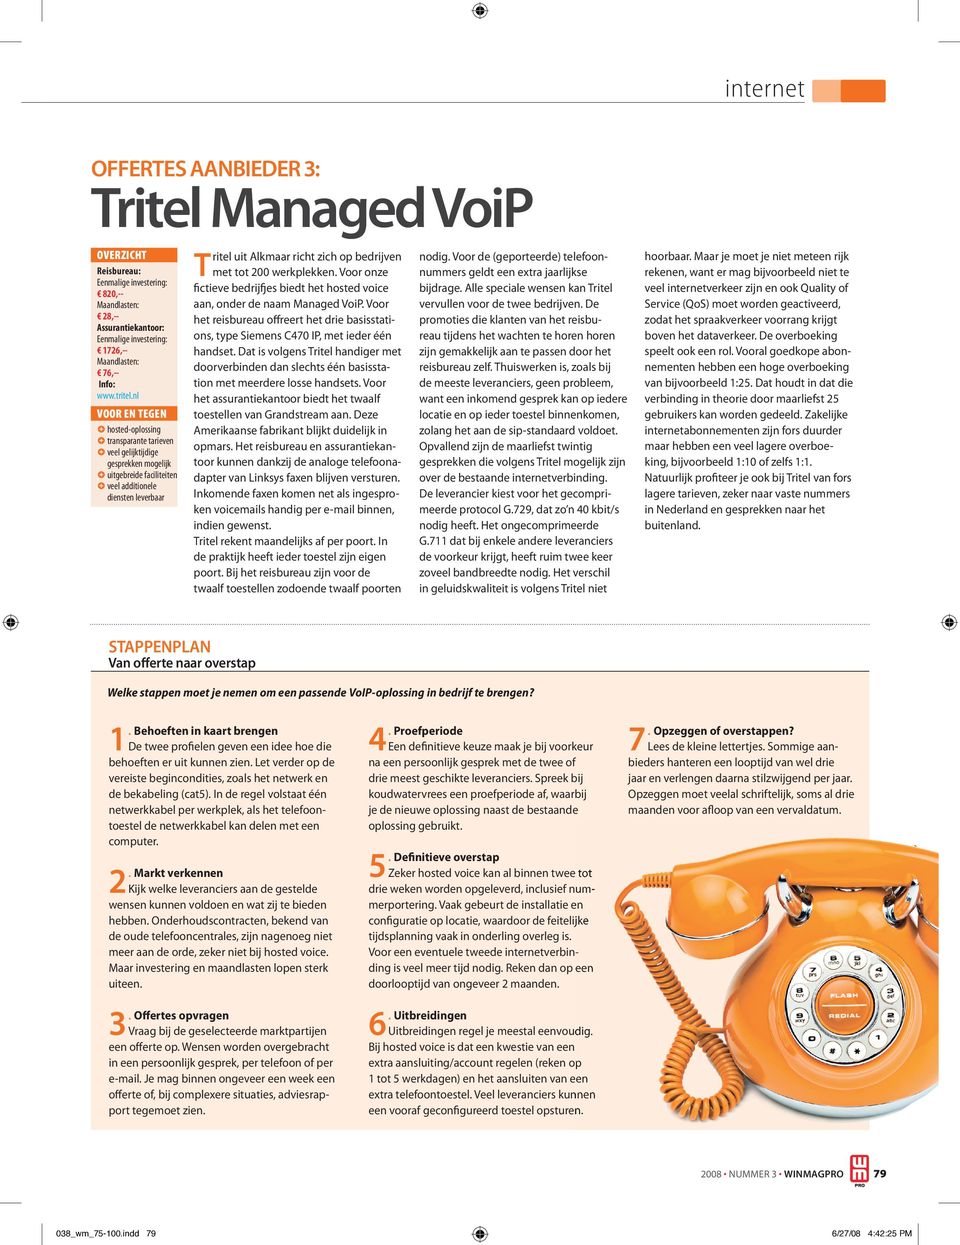 bedrijven met tot 200 werkplekken. Voor onze fictieve bedrijfjes biedt het hosted voice aan, onder de naam Managed VoiP.